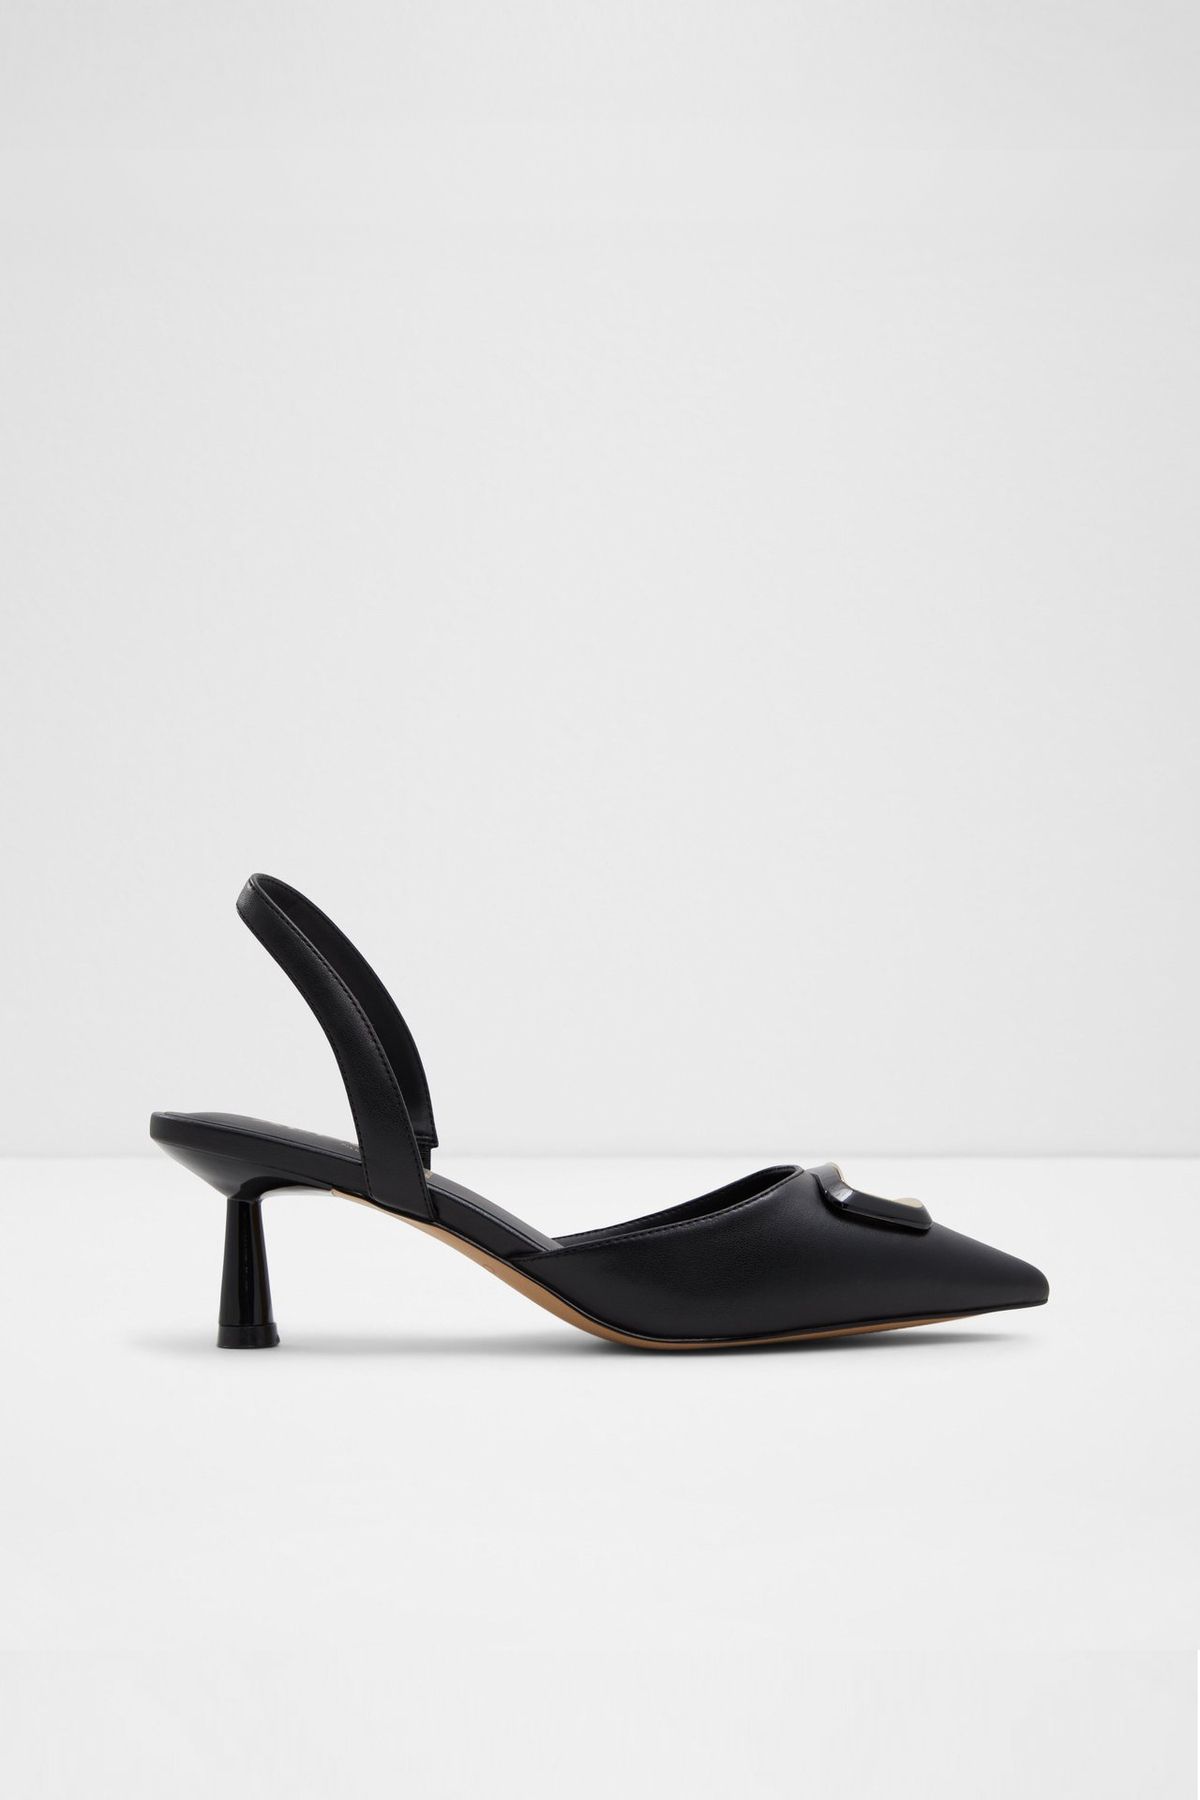 Aldo GIOCANTE - Siyah Kadın Topuklu Ayakkabı